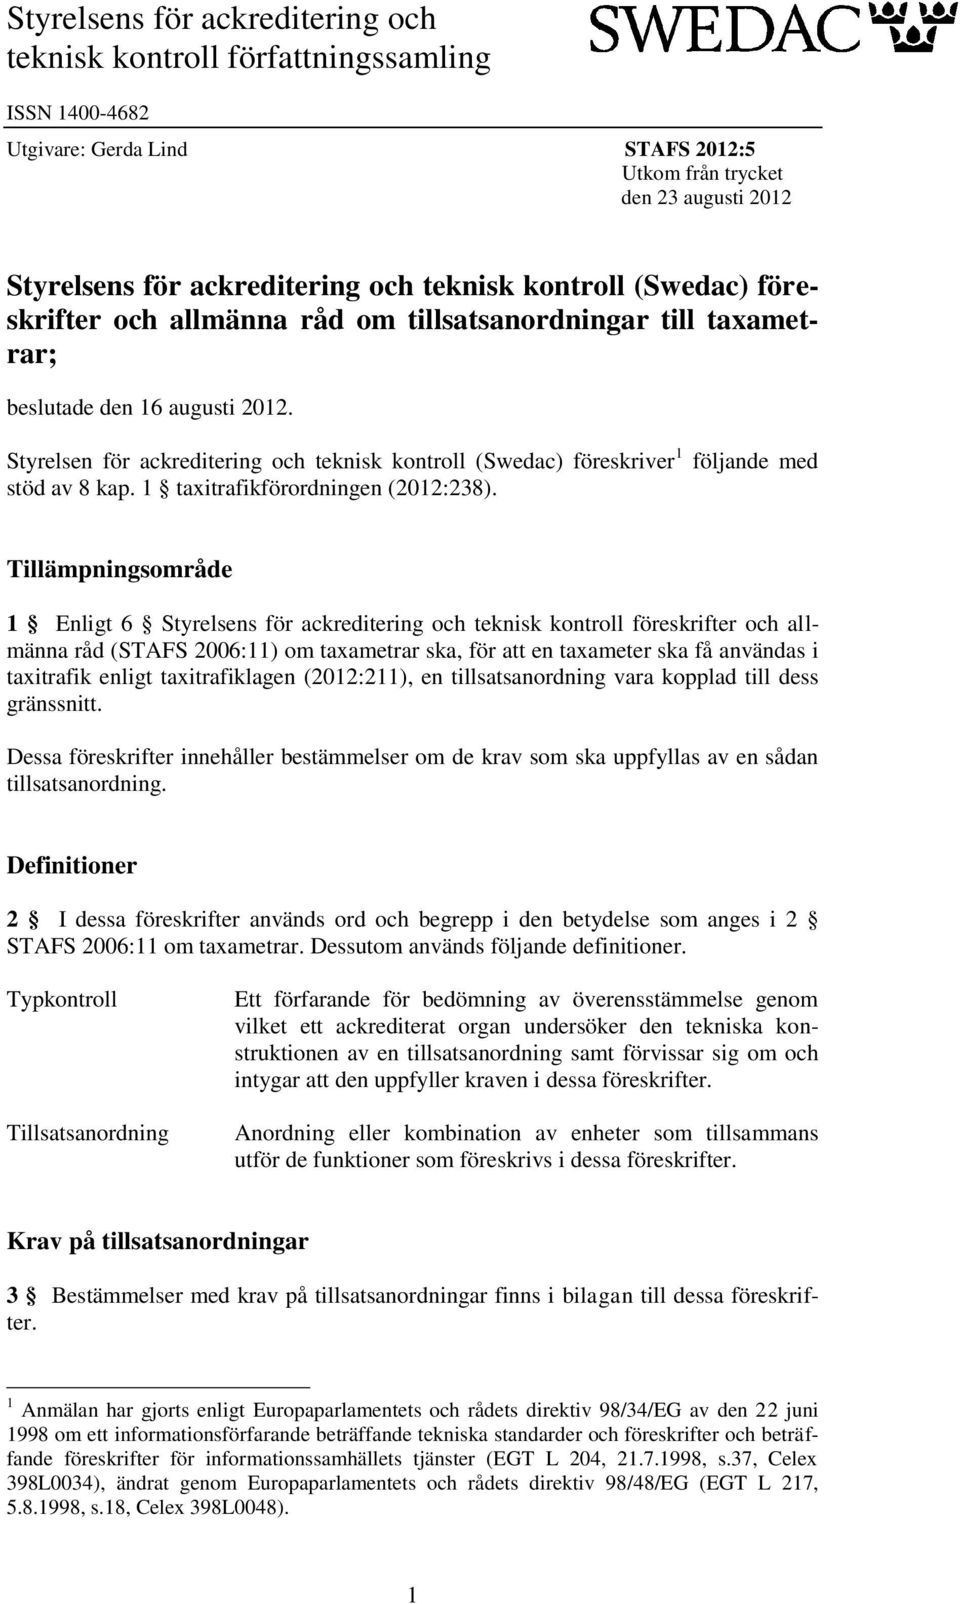 Styrelsen för ackreditering och teknisk kontroll (Swedac) föreskriver 1 följande med stöd av 8 kap. 1 taxitrafikförordningen (2012:238).